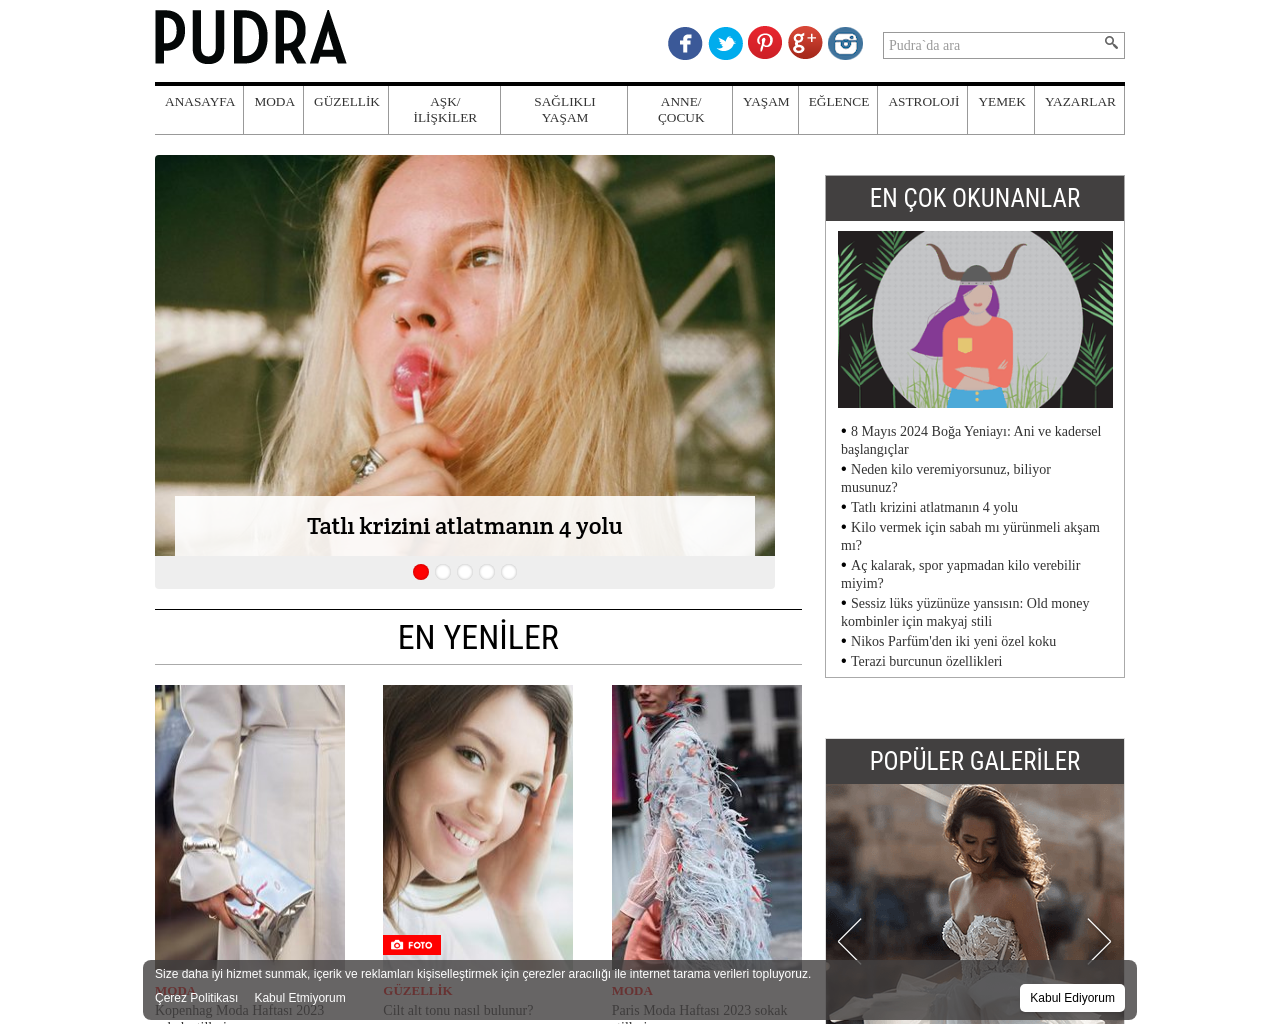 pudra.com